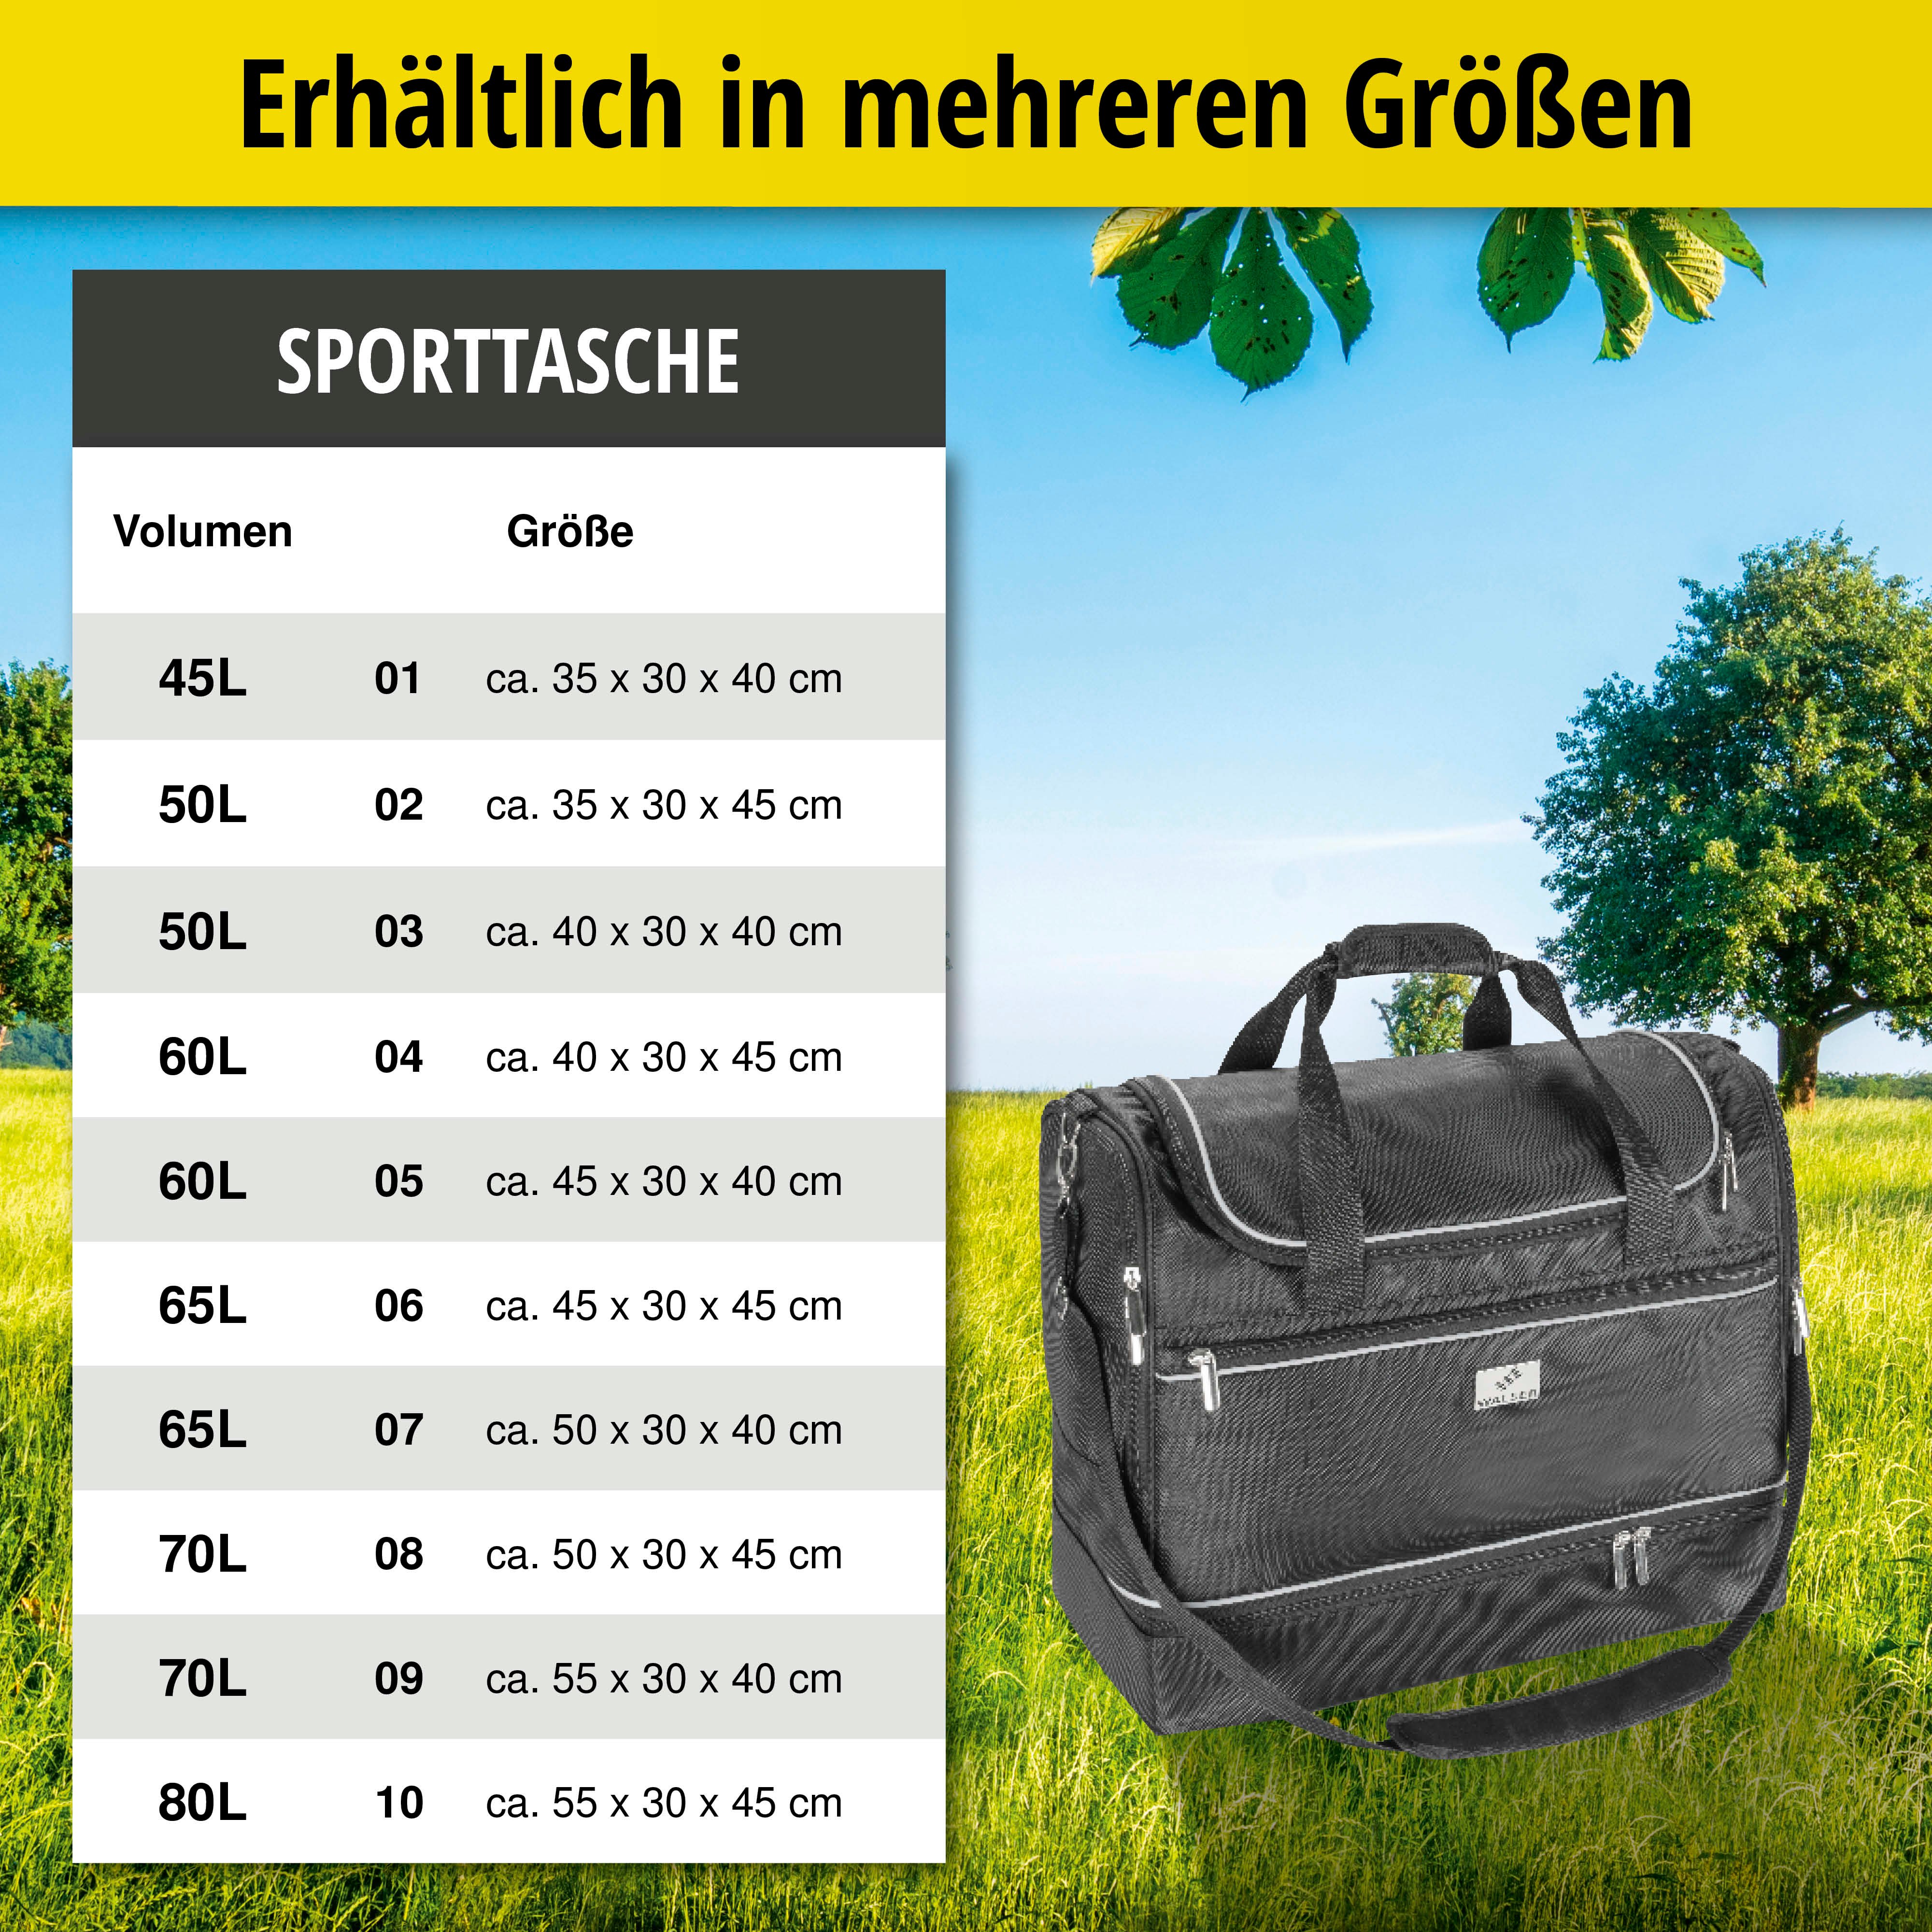 Carbags Sporttasche, Trainingstasche 50L - 35x30x45 cm